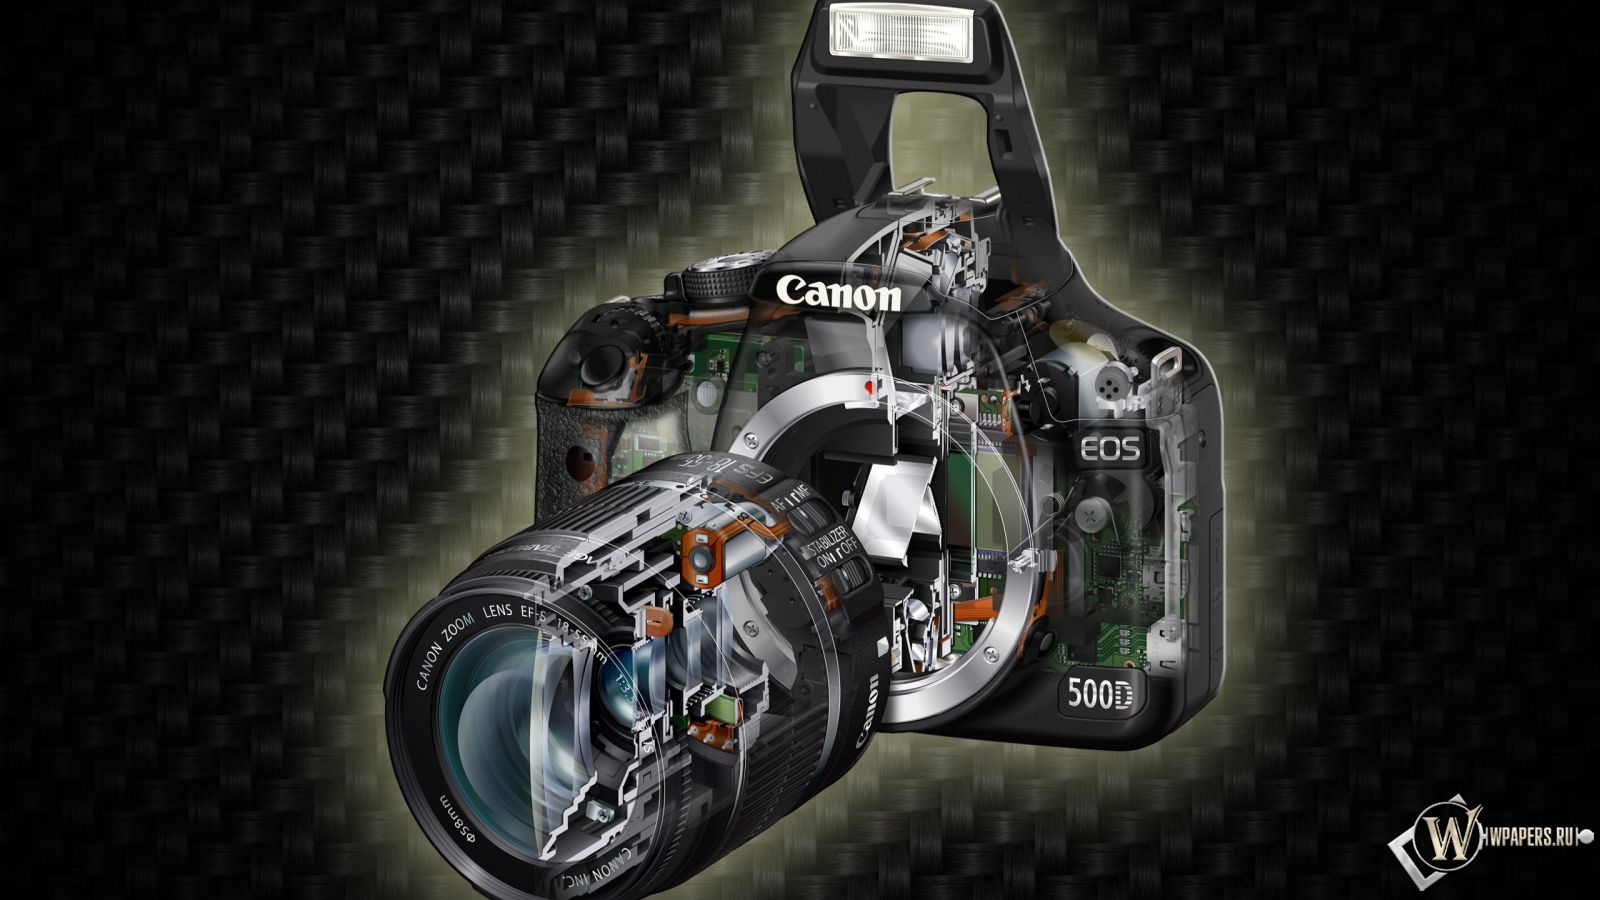 Canon, Eos 500d 1600x900